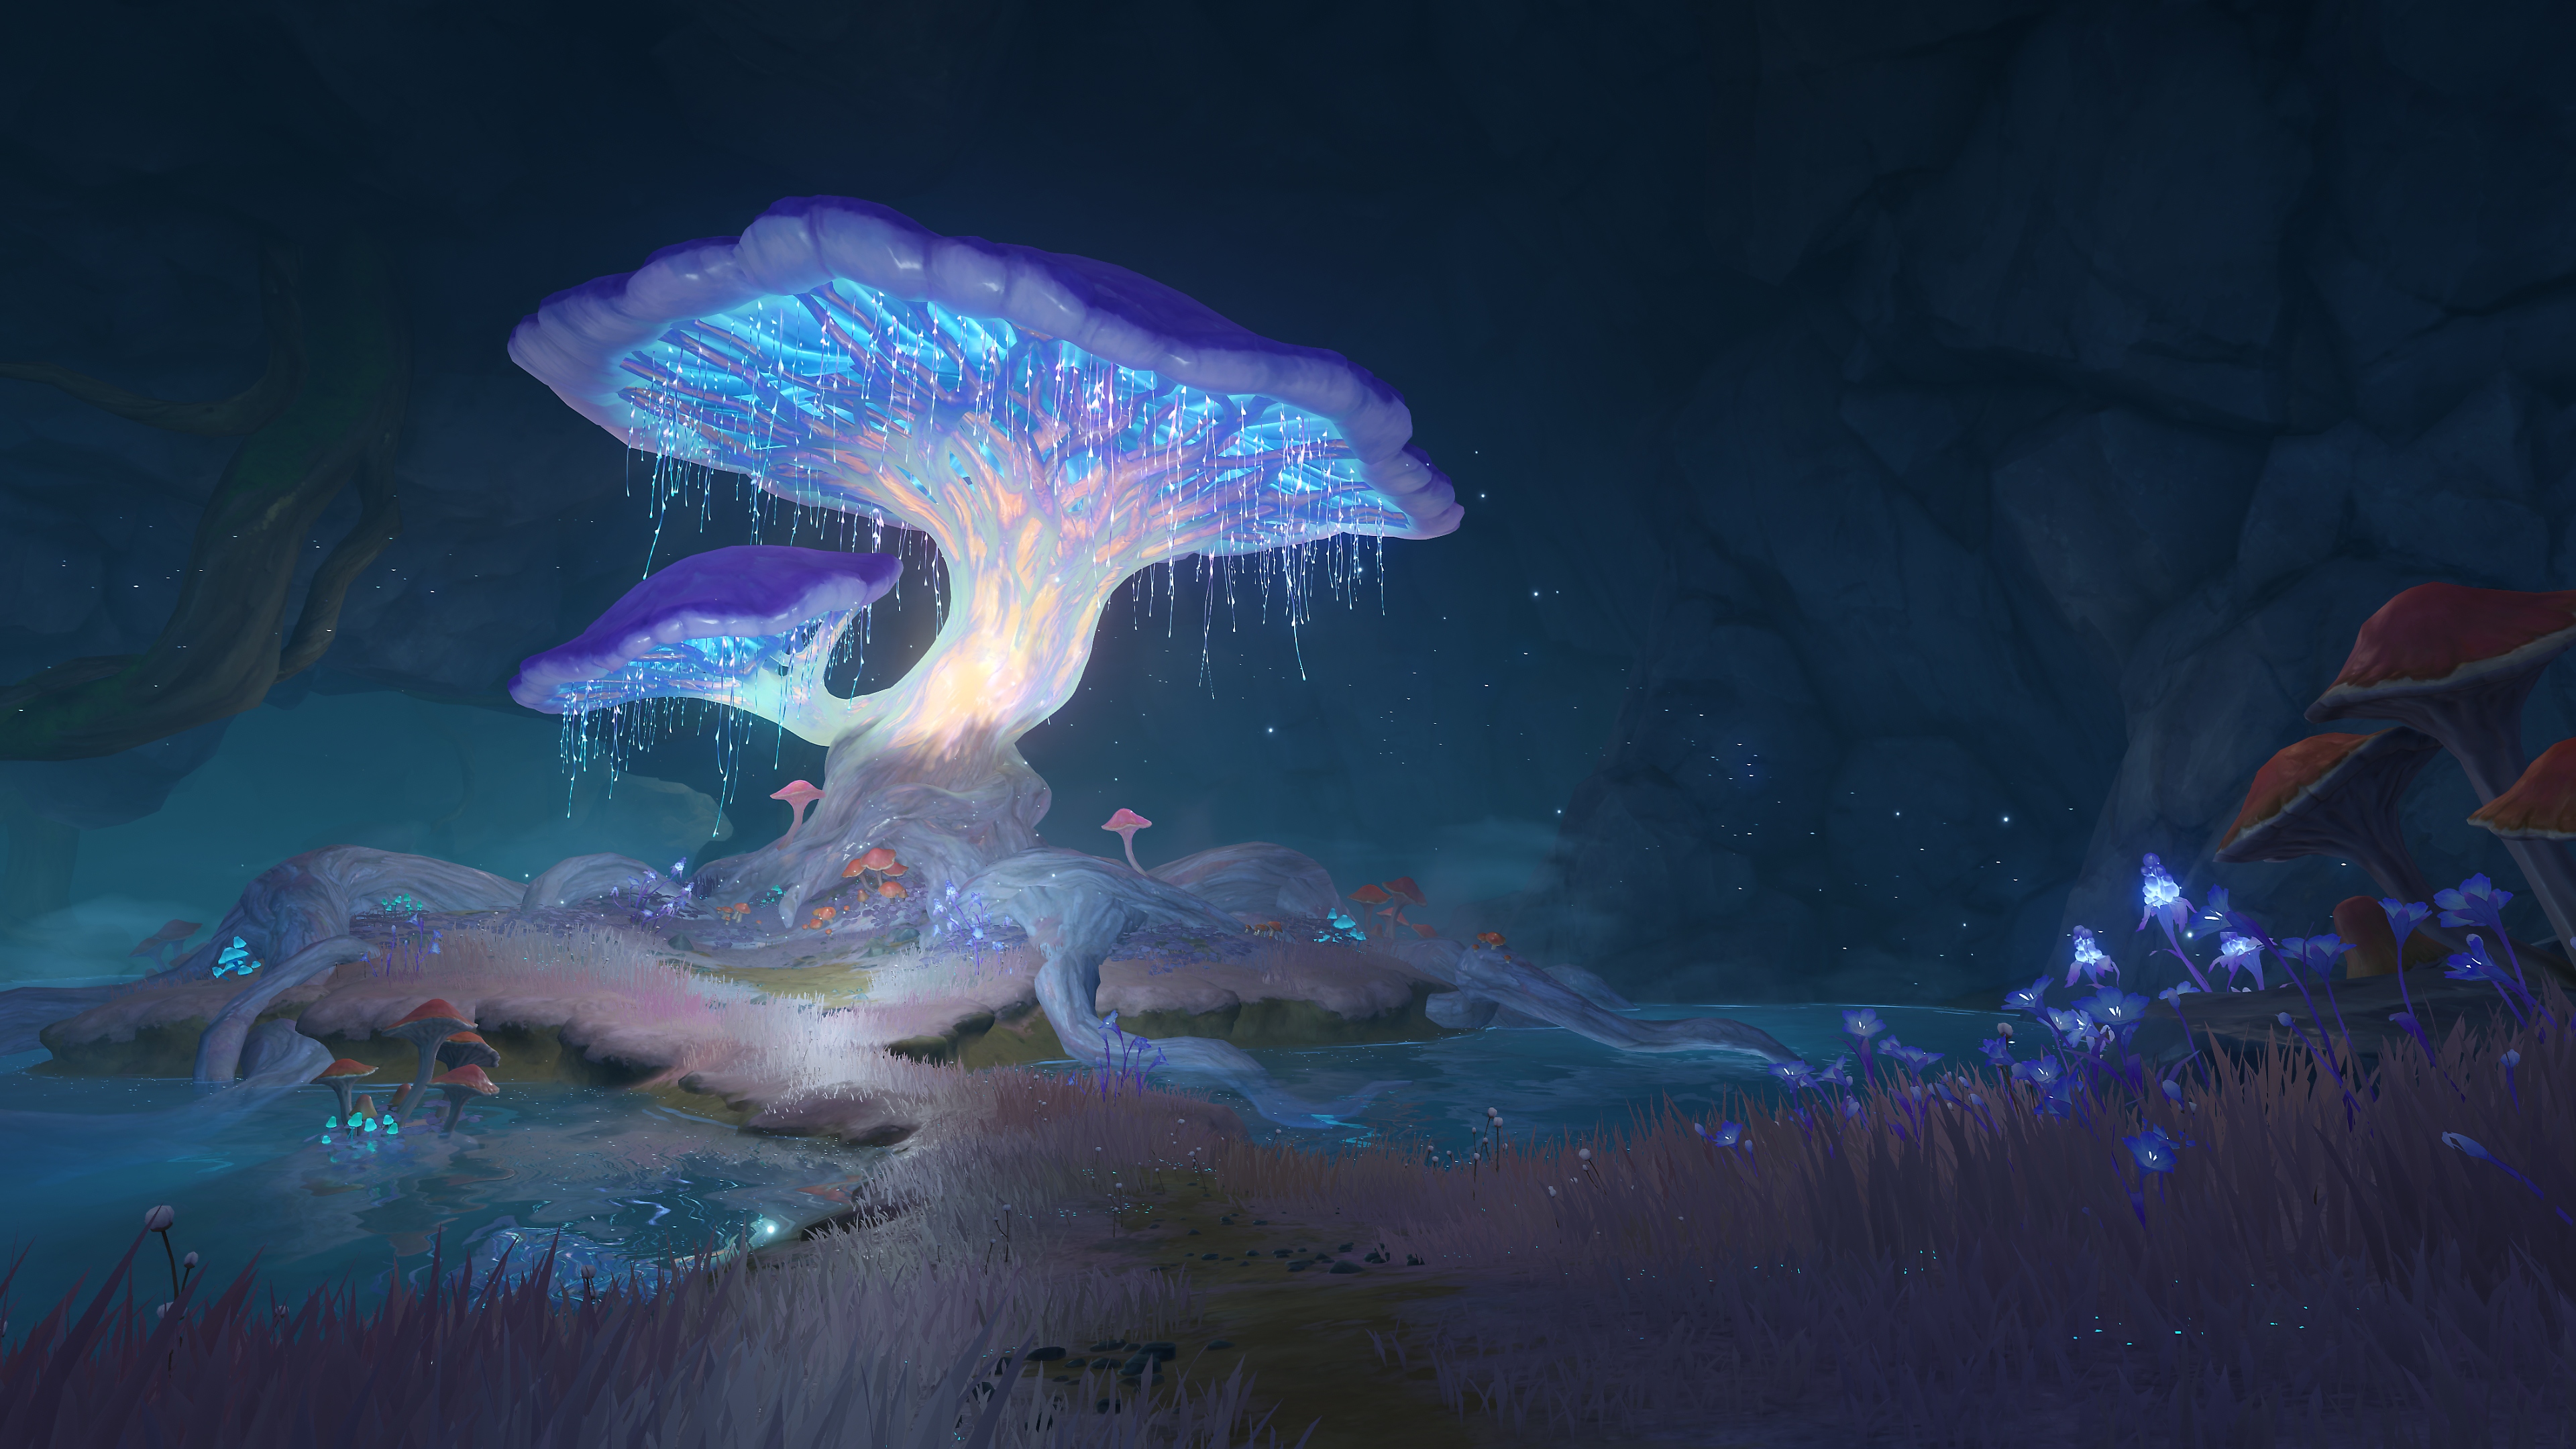 Impacto de GenShin: Captura de pantalla de Actualización 2.6 que muestra un hongo brillante en una caverna o entorno subterráneo